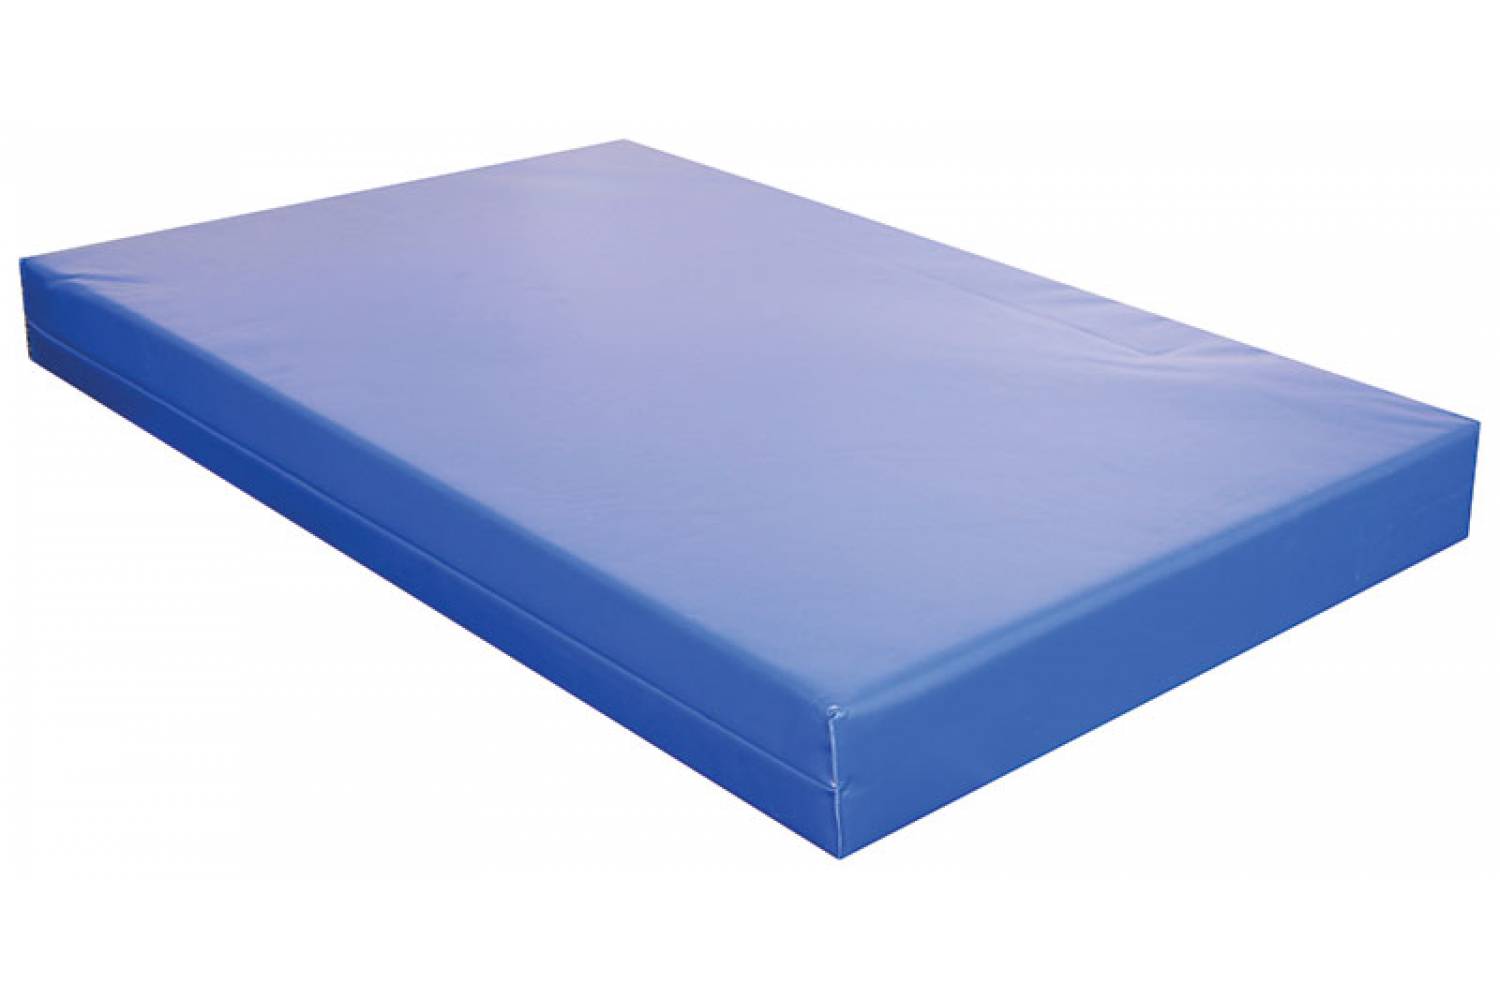 mattress waterproof cover for tall mattress